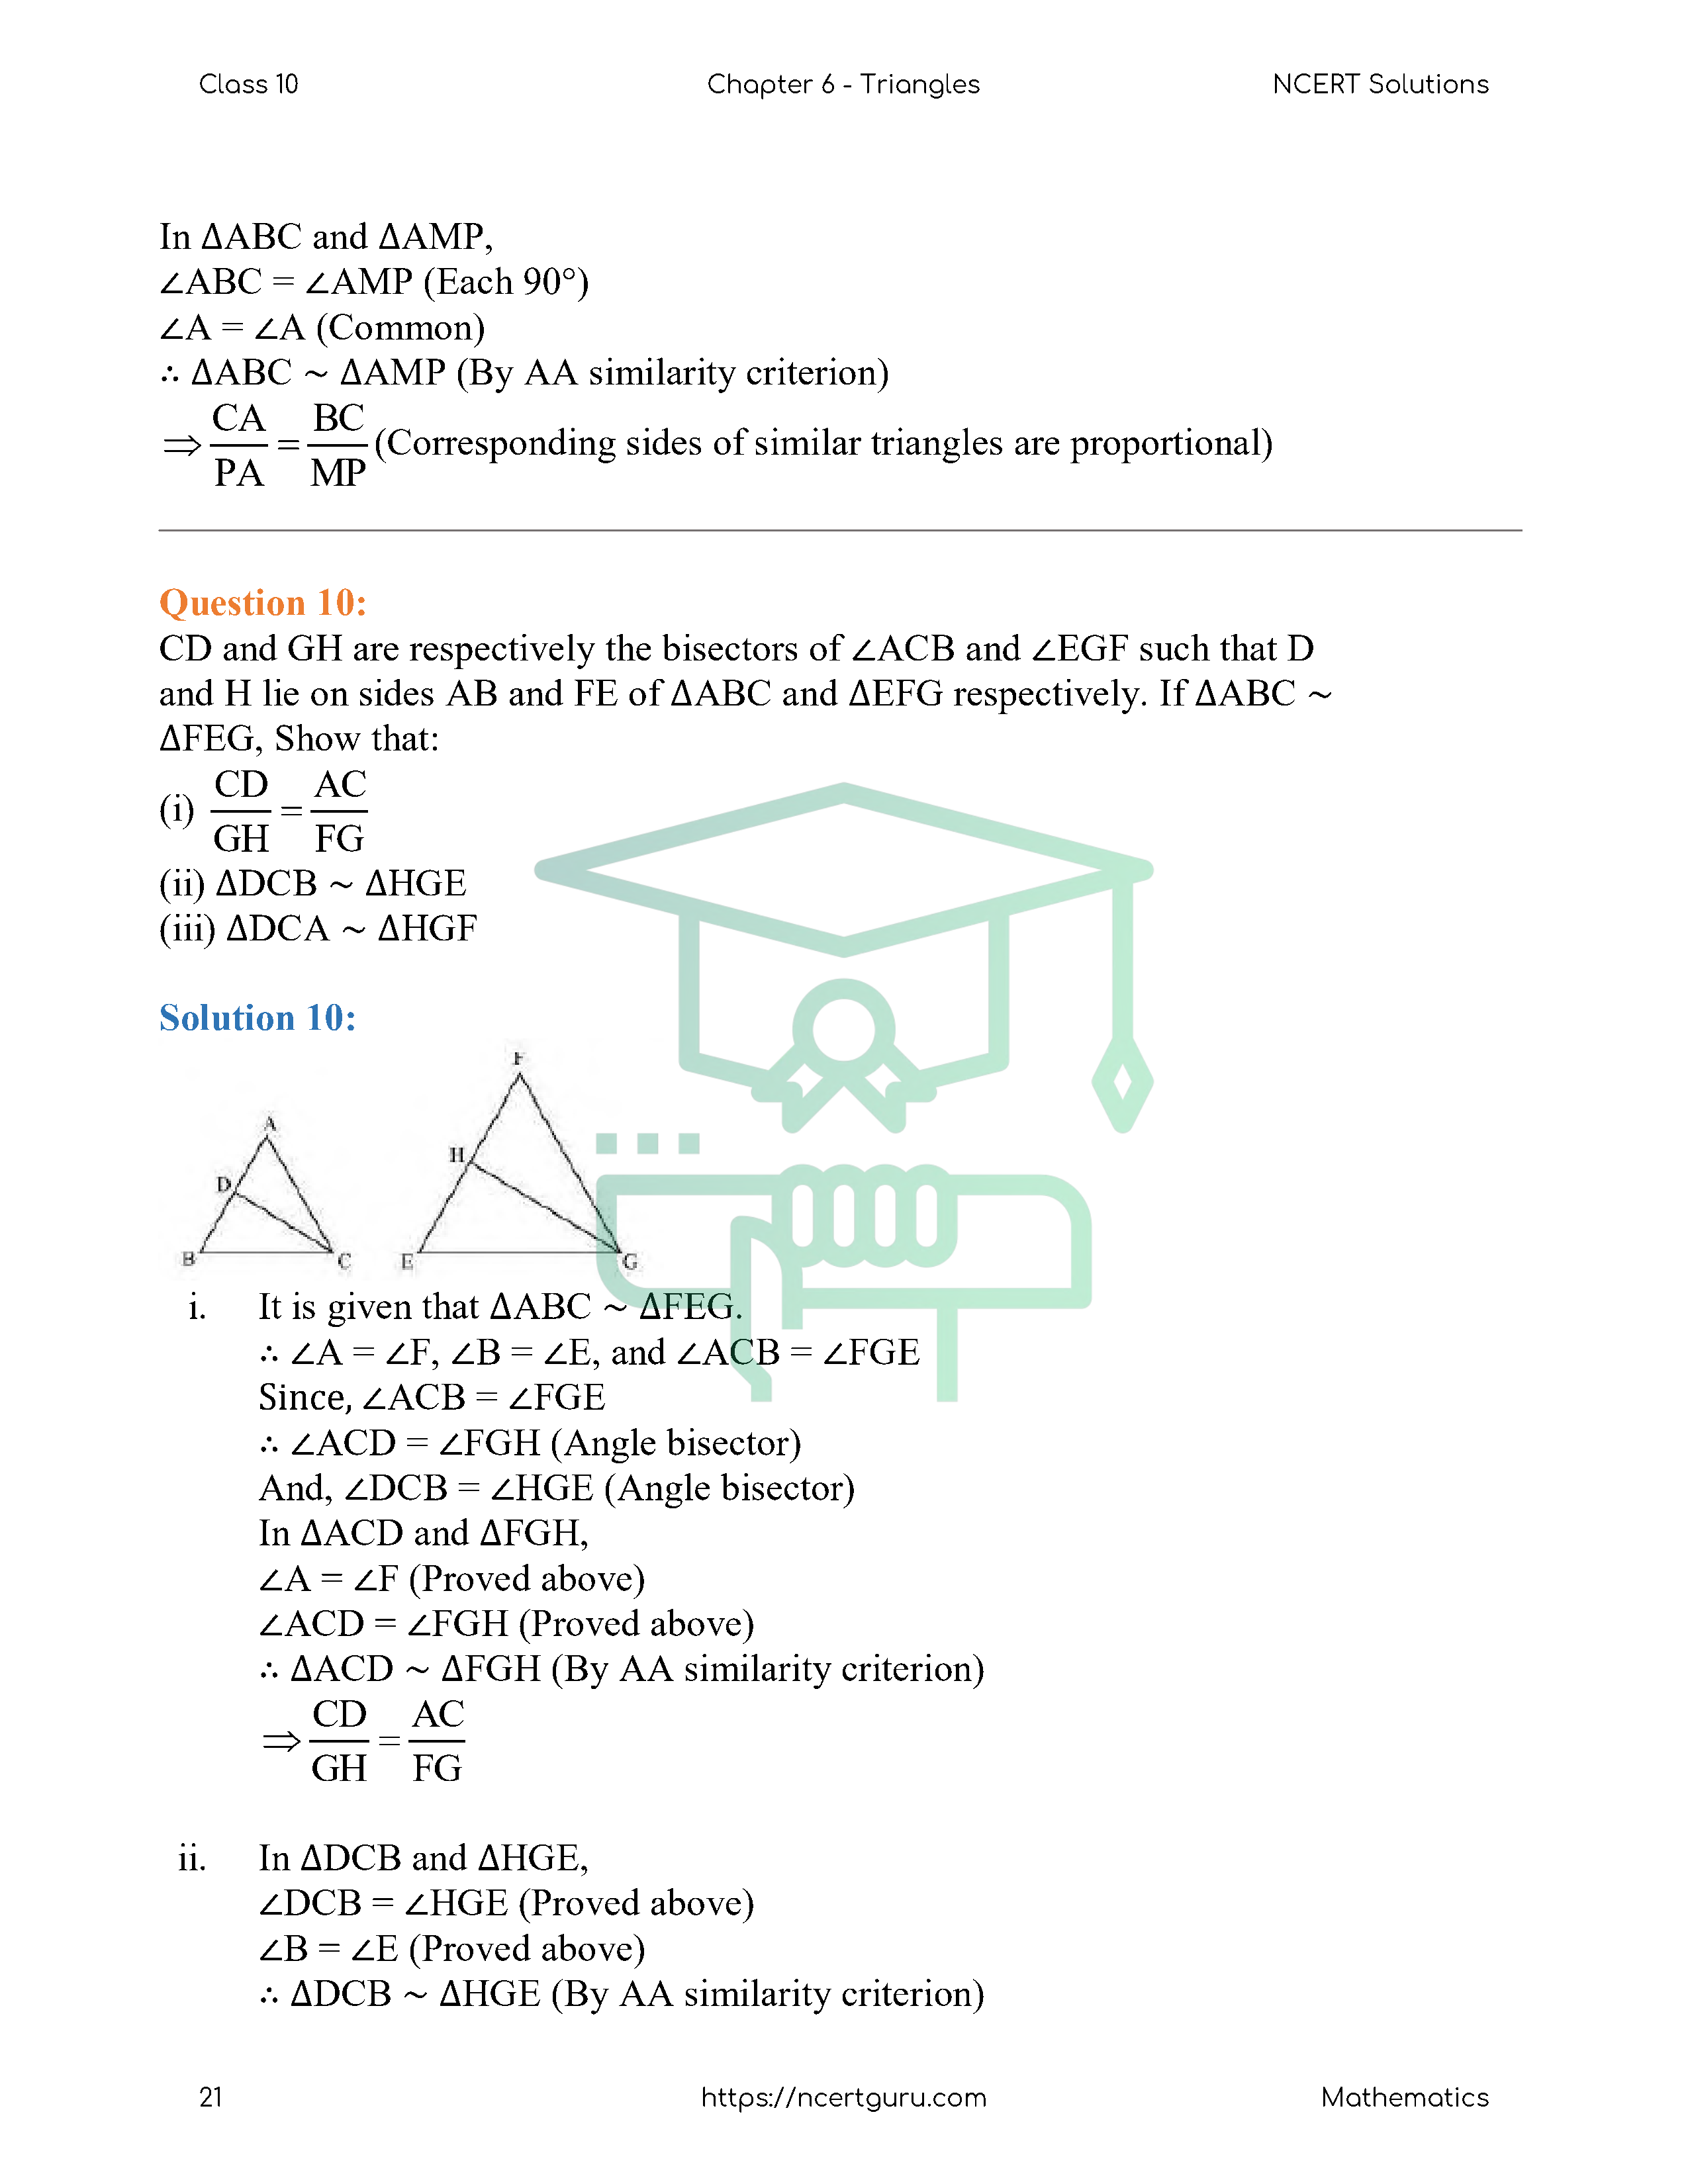 NCERT Solutions for Class 10 Maths Chapter 6